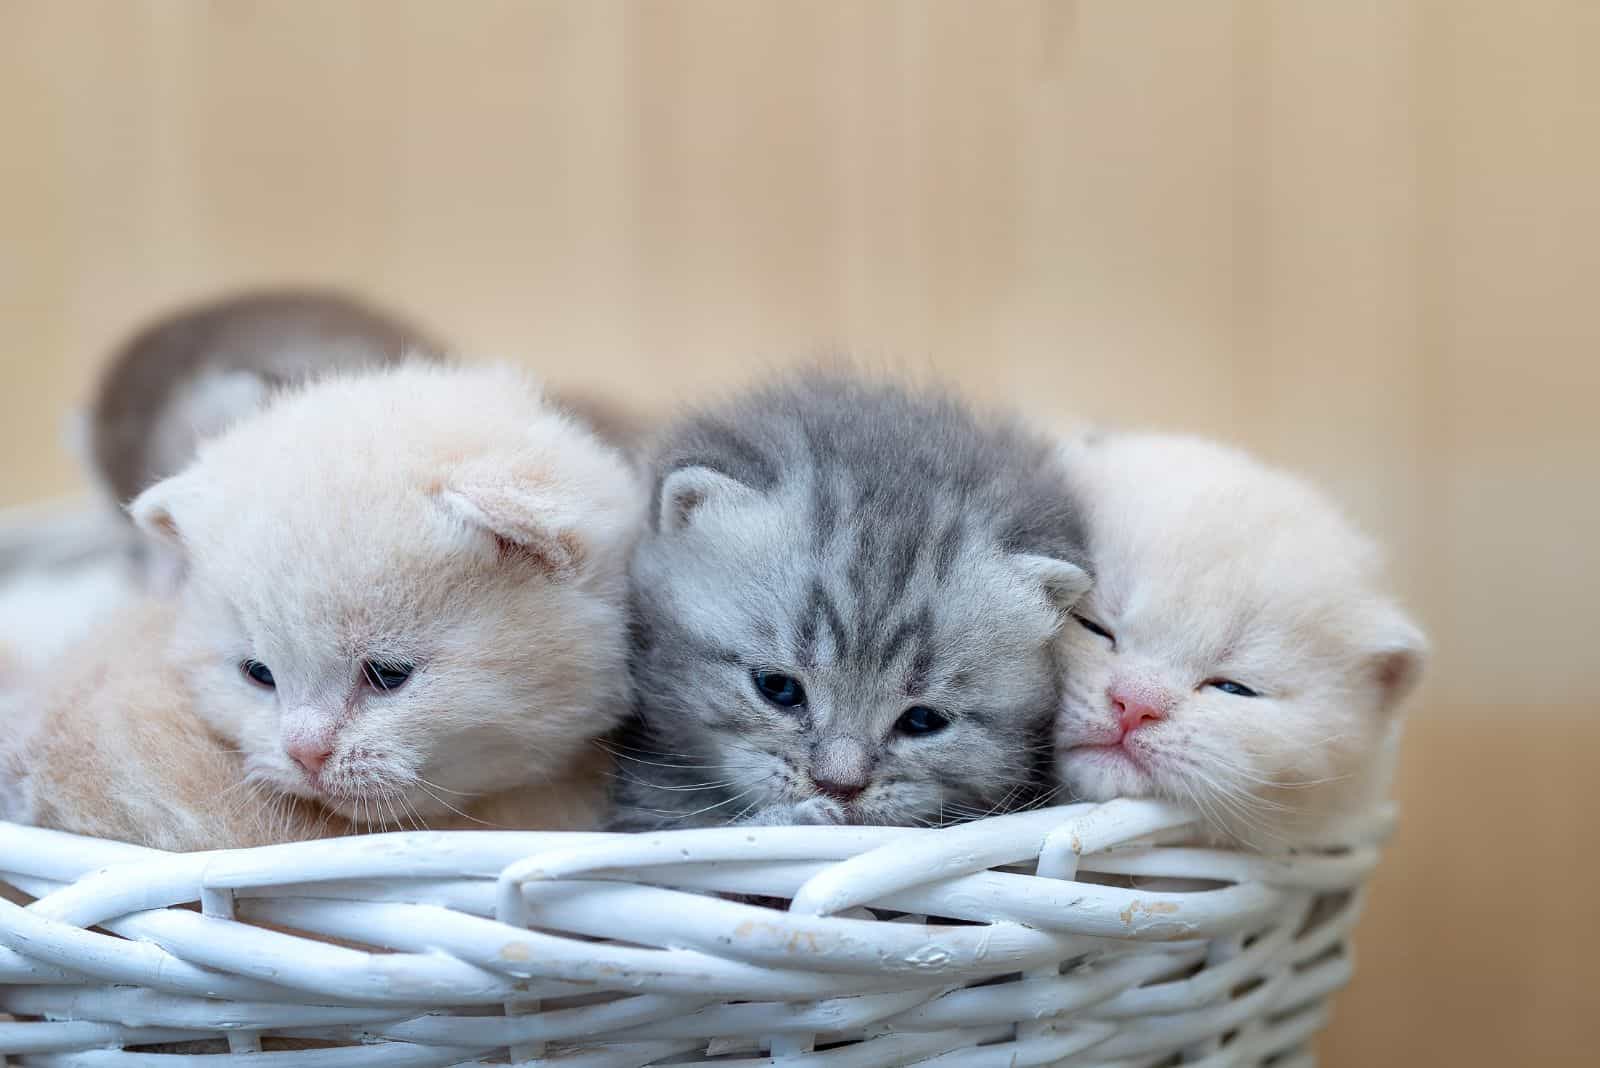 British Shorthair kitten in a wicker basket